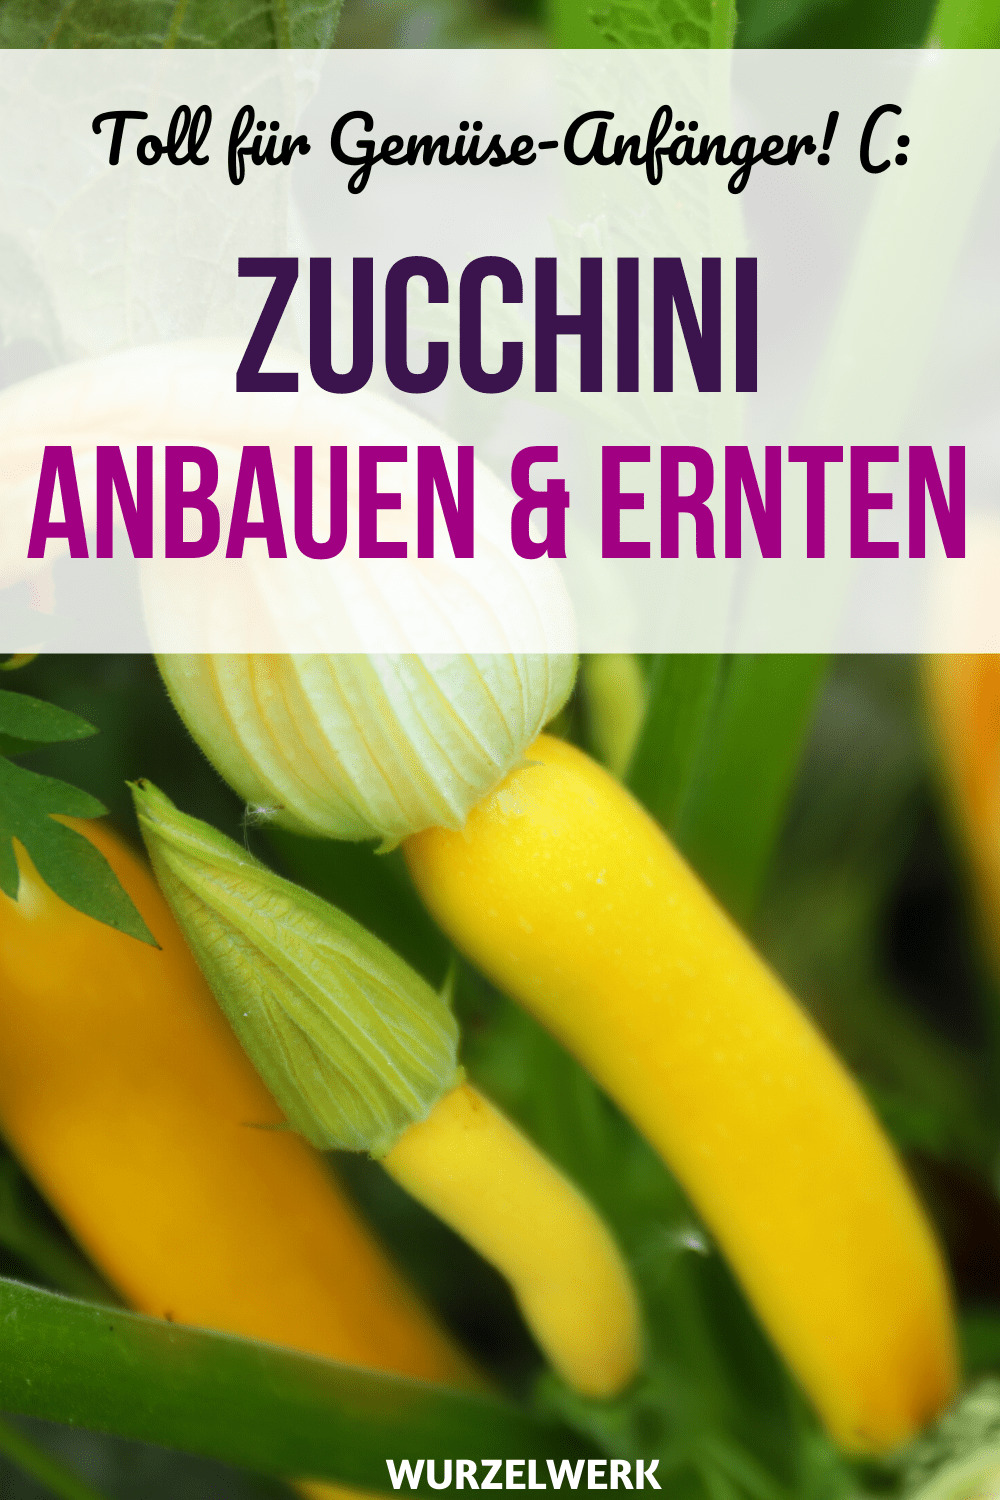 Zucchini pflanzen und anbauen